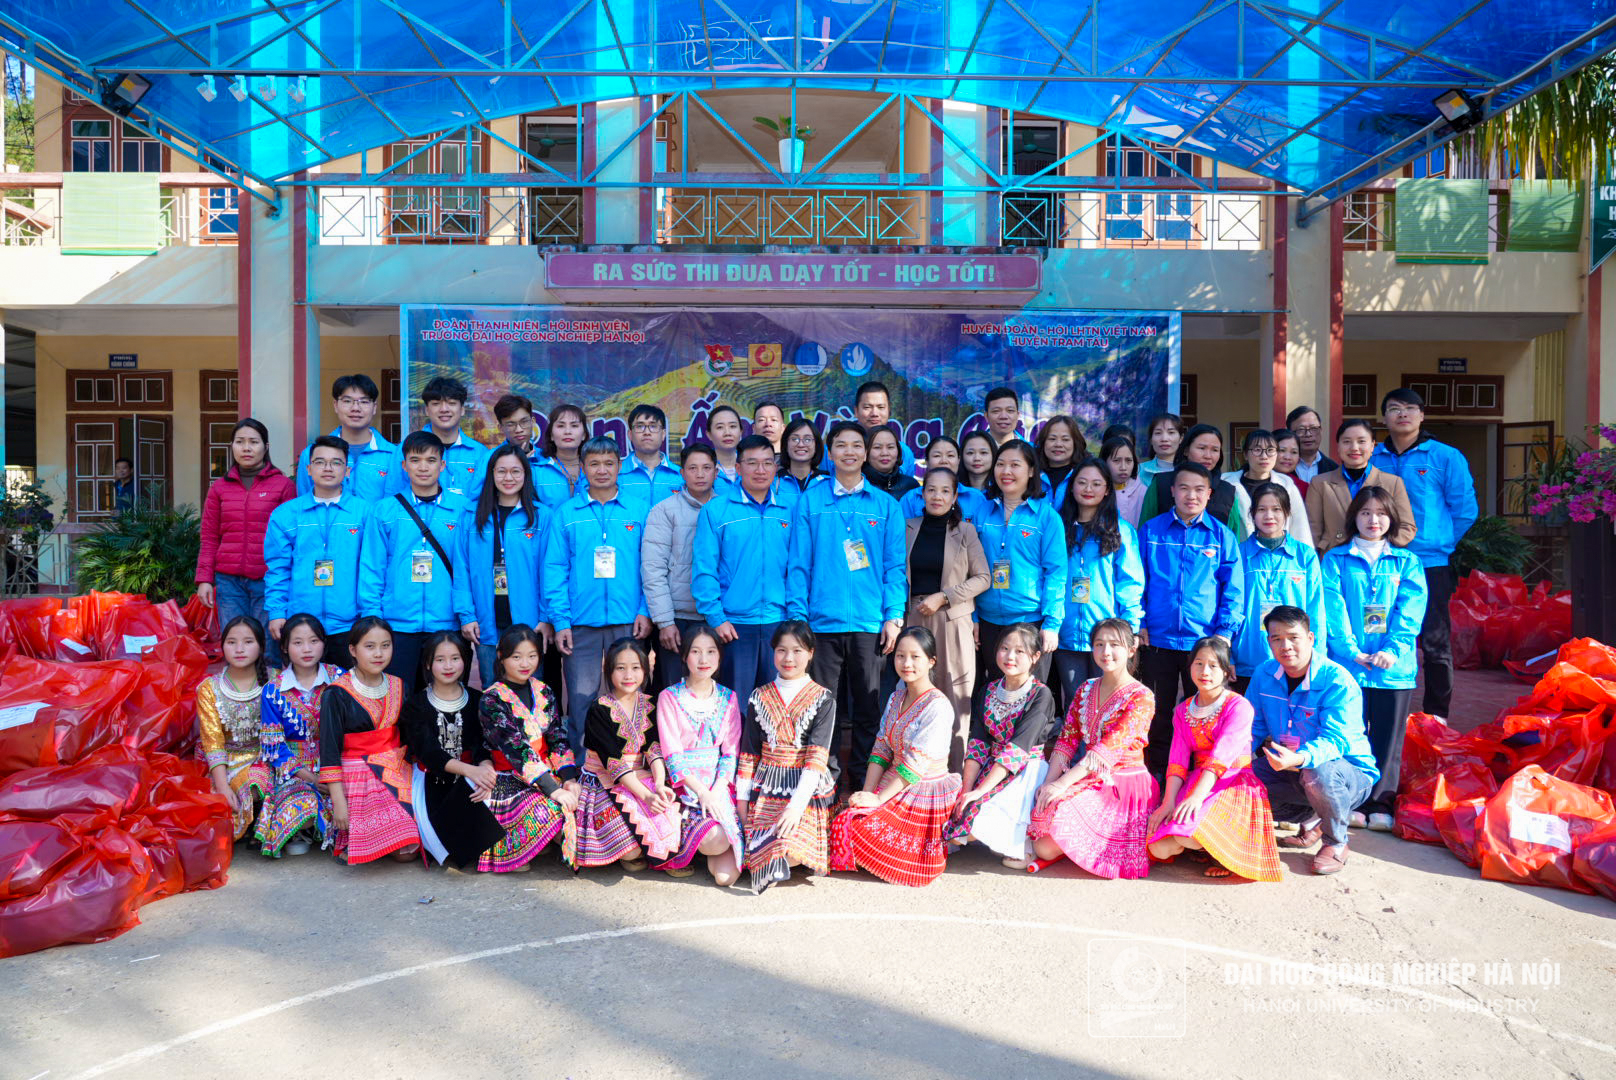 Tuổi trẻ Trường Ngoại ngữ - Du lịch với Đông Ấm Vùng Cao: Lan tỏa Yêu Thương và Nỗ Lực Xây Dựng Cộng Đồng